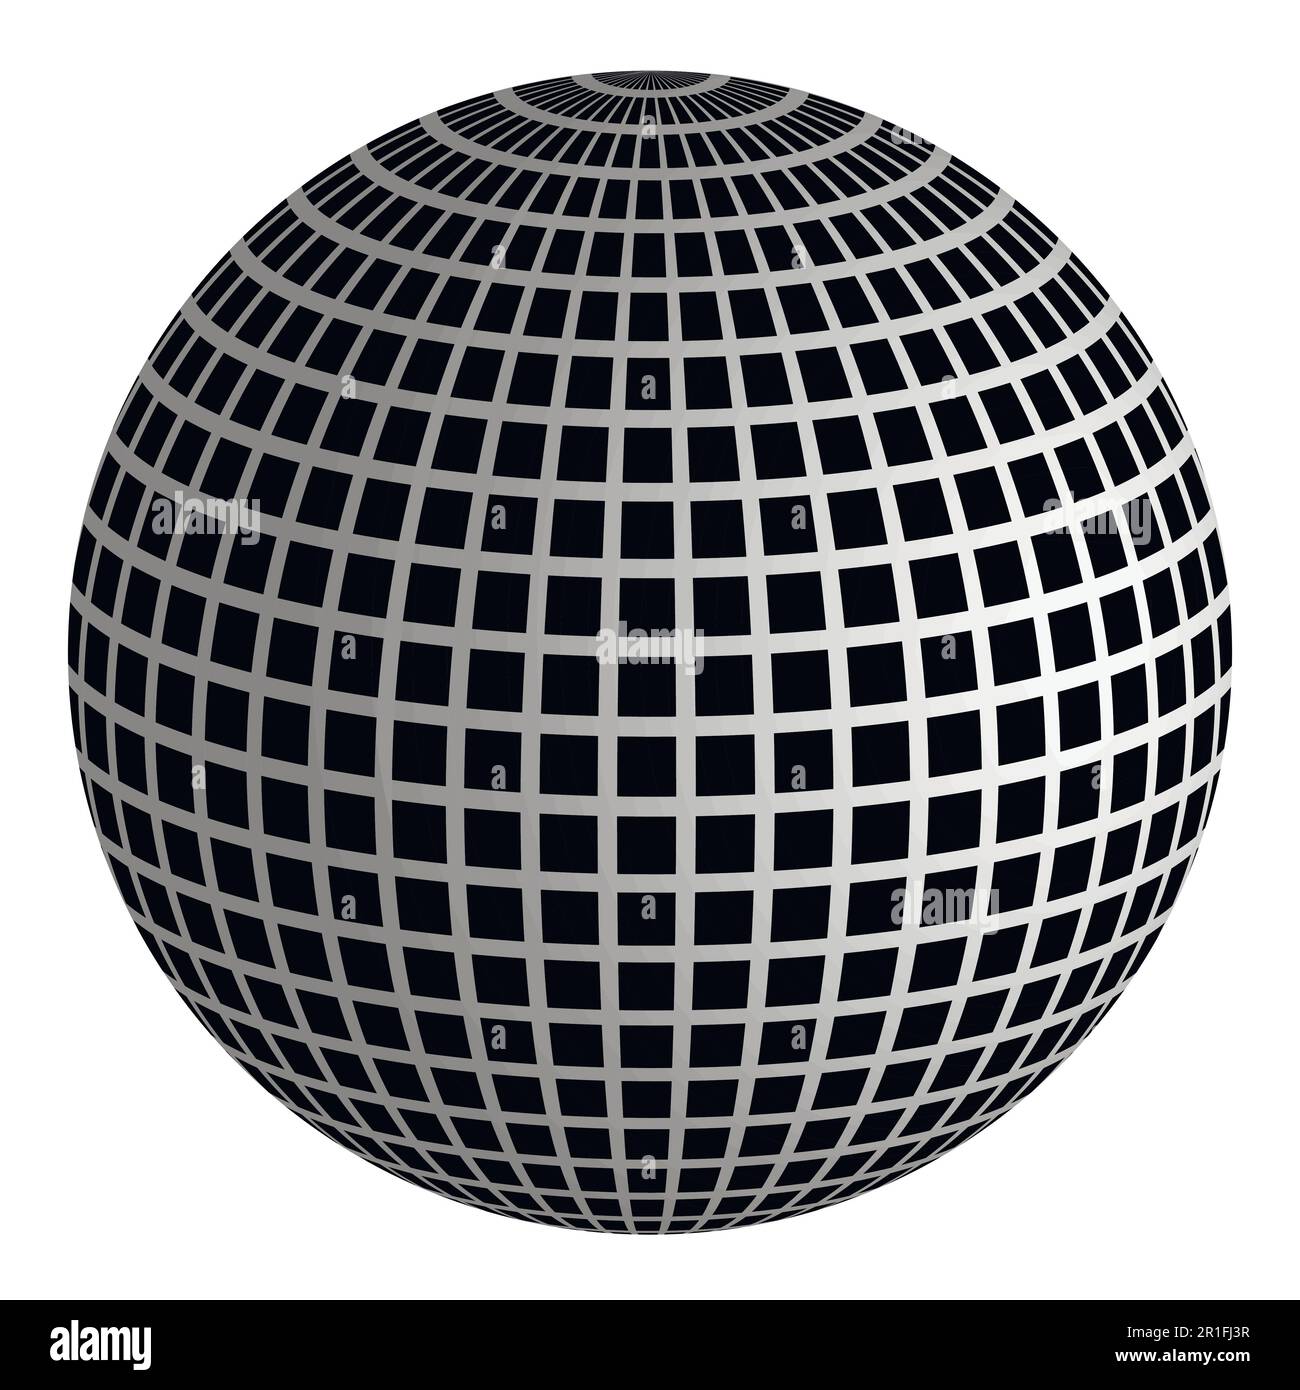 Disco ball 3D ball of mirrors Stock Vector